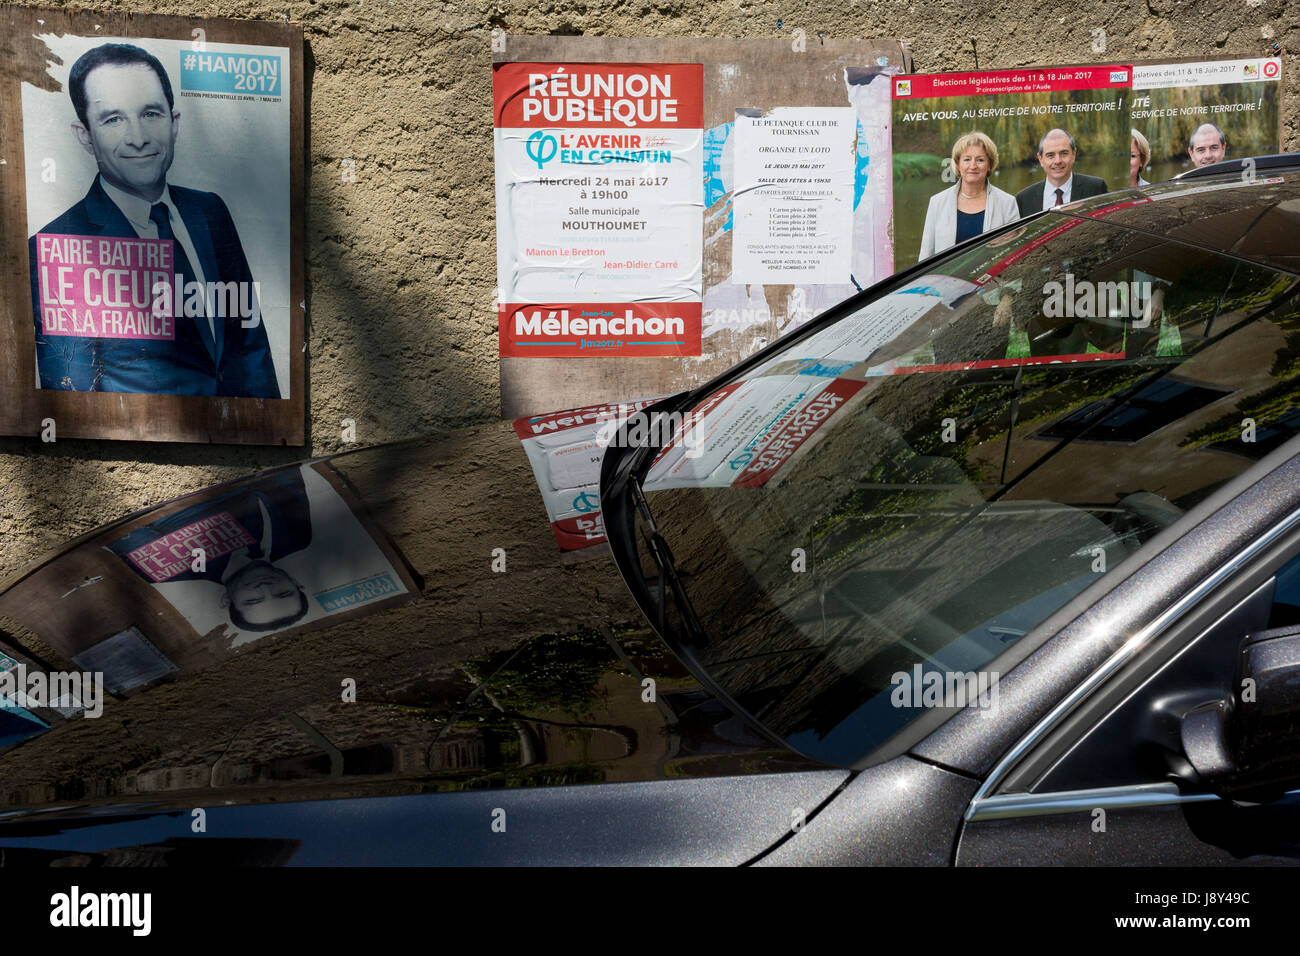 Parti socialiste français Benoît Hamon candidat présidentielle poster le 26 mai 2017, à termes, Midi-Pyrénées, sud de la France Banque D'Images